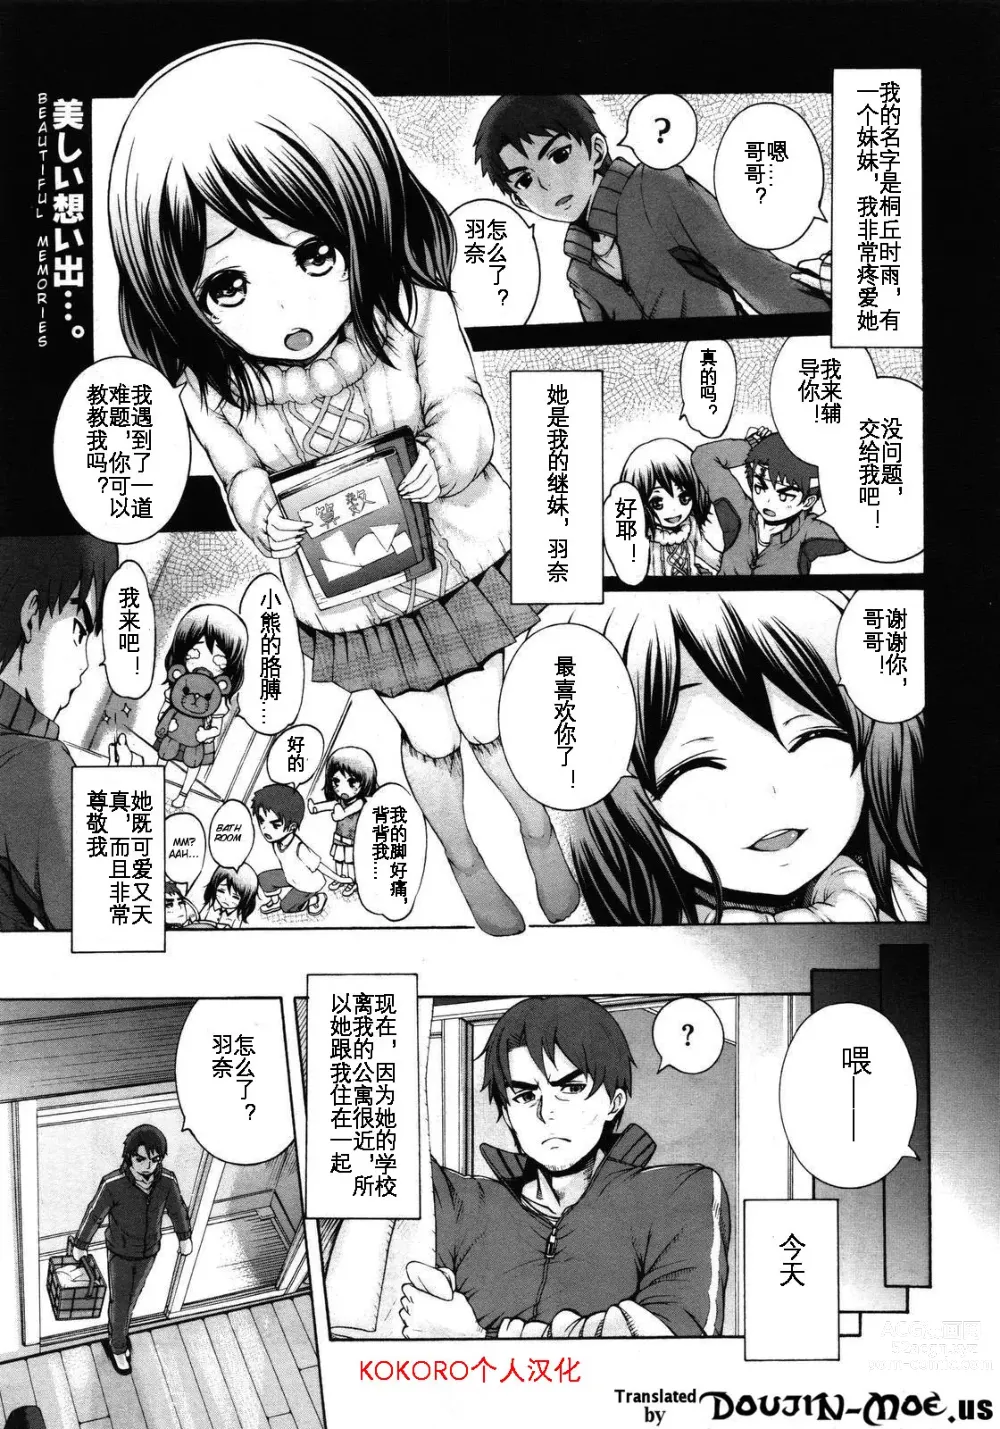 Page 2 of manga Konna Ani no Imouto Dakara   Animoca